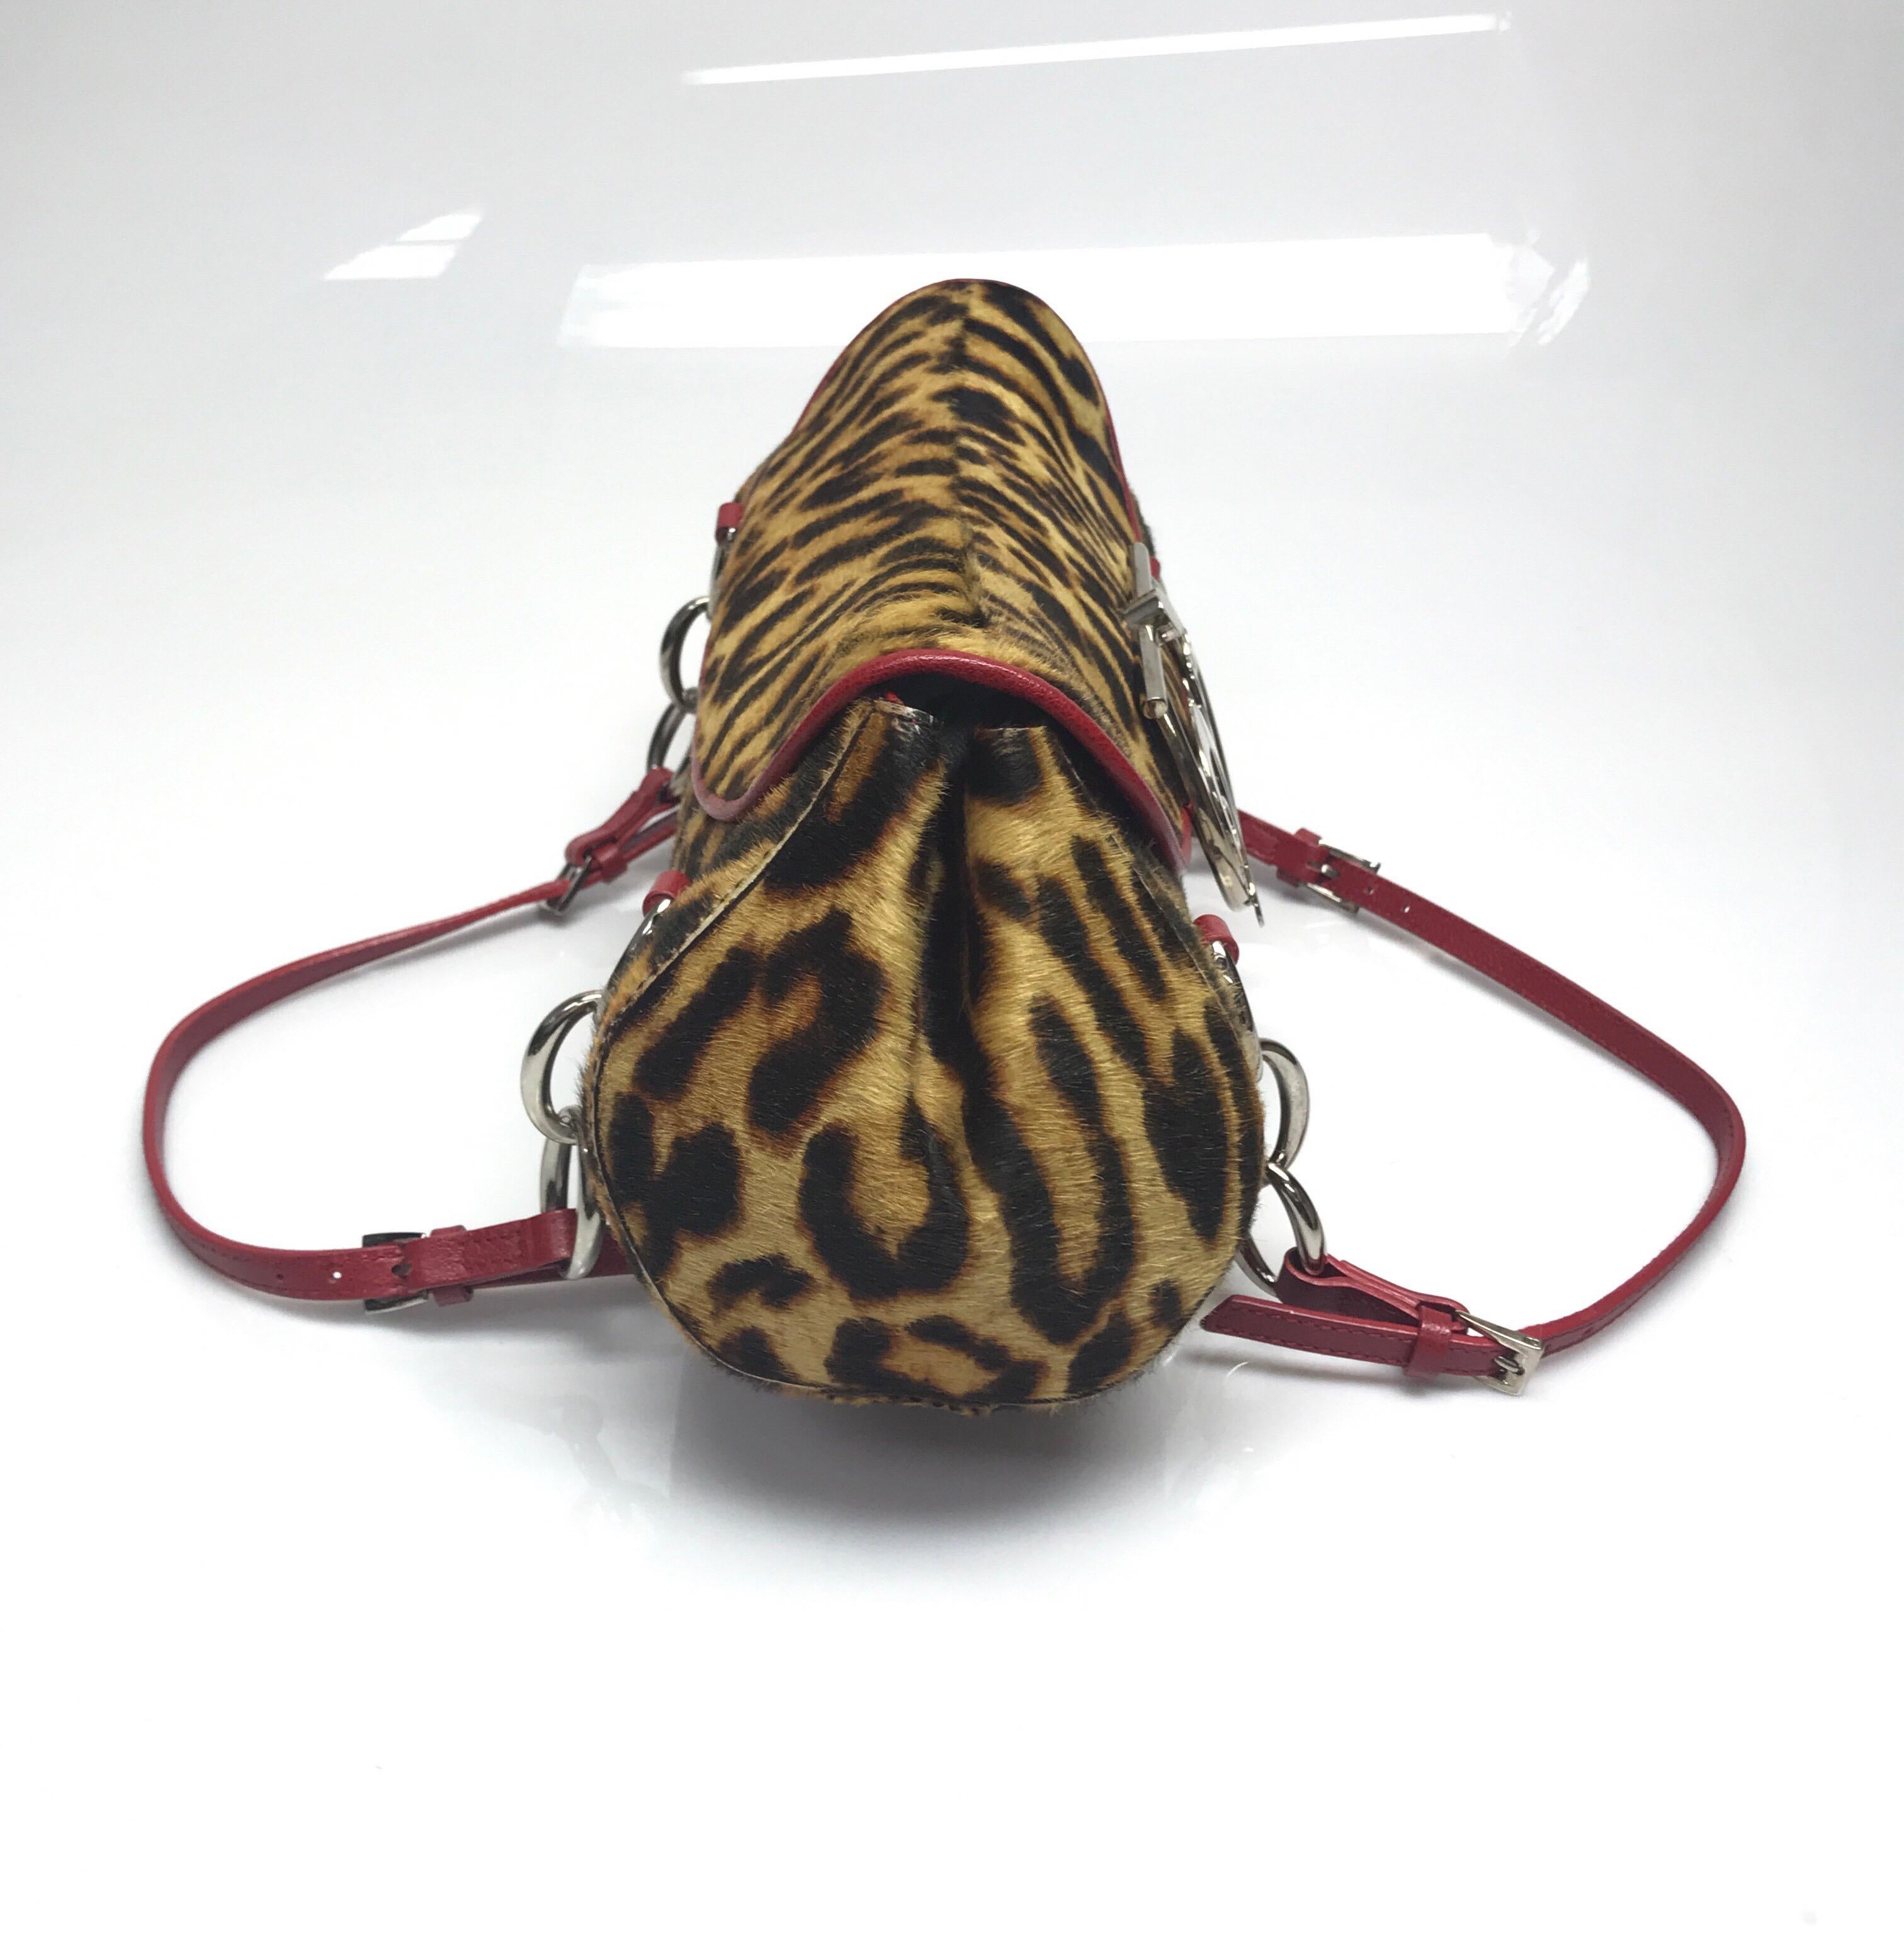 Sac à main Christian Dior en poil de poney imprimé léopard. Cet étonnant sac à main Christian Dior est en excellent état:: il n'y a aucun signe d'utilisation. Ce sac à main de taille moyenne est fabriqué en poils de poney avec un motif léopard. Le